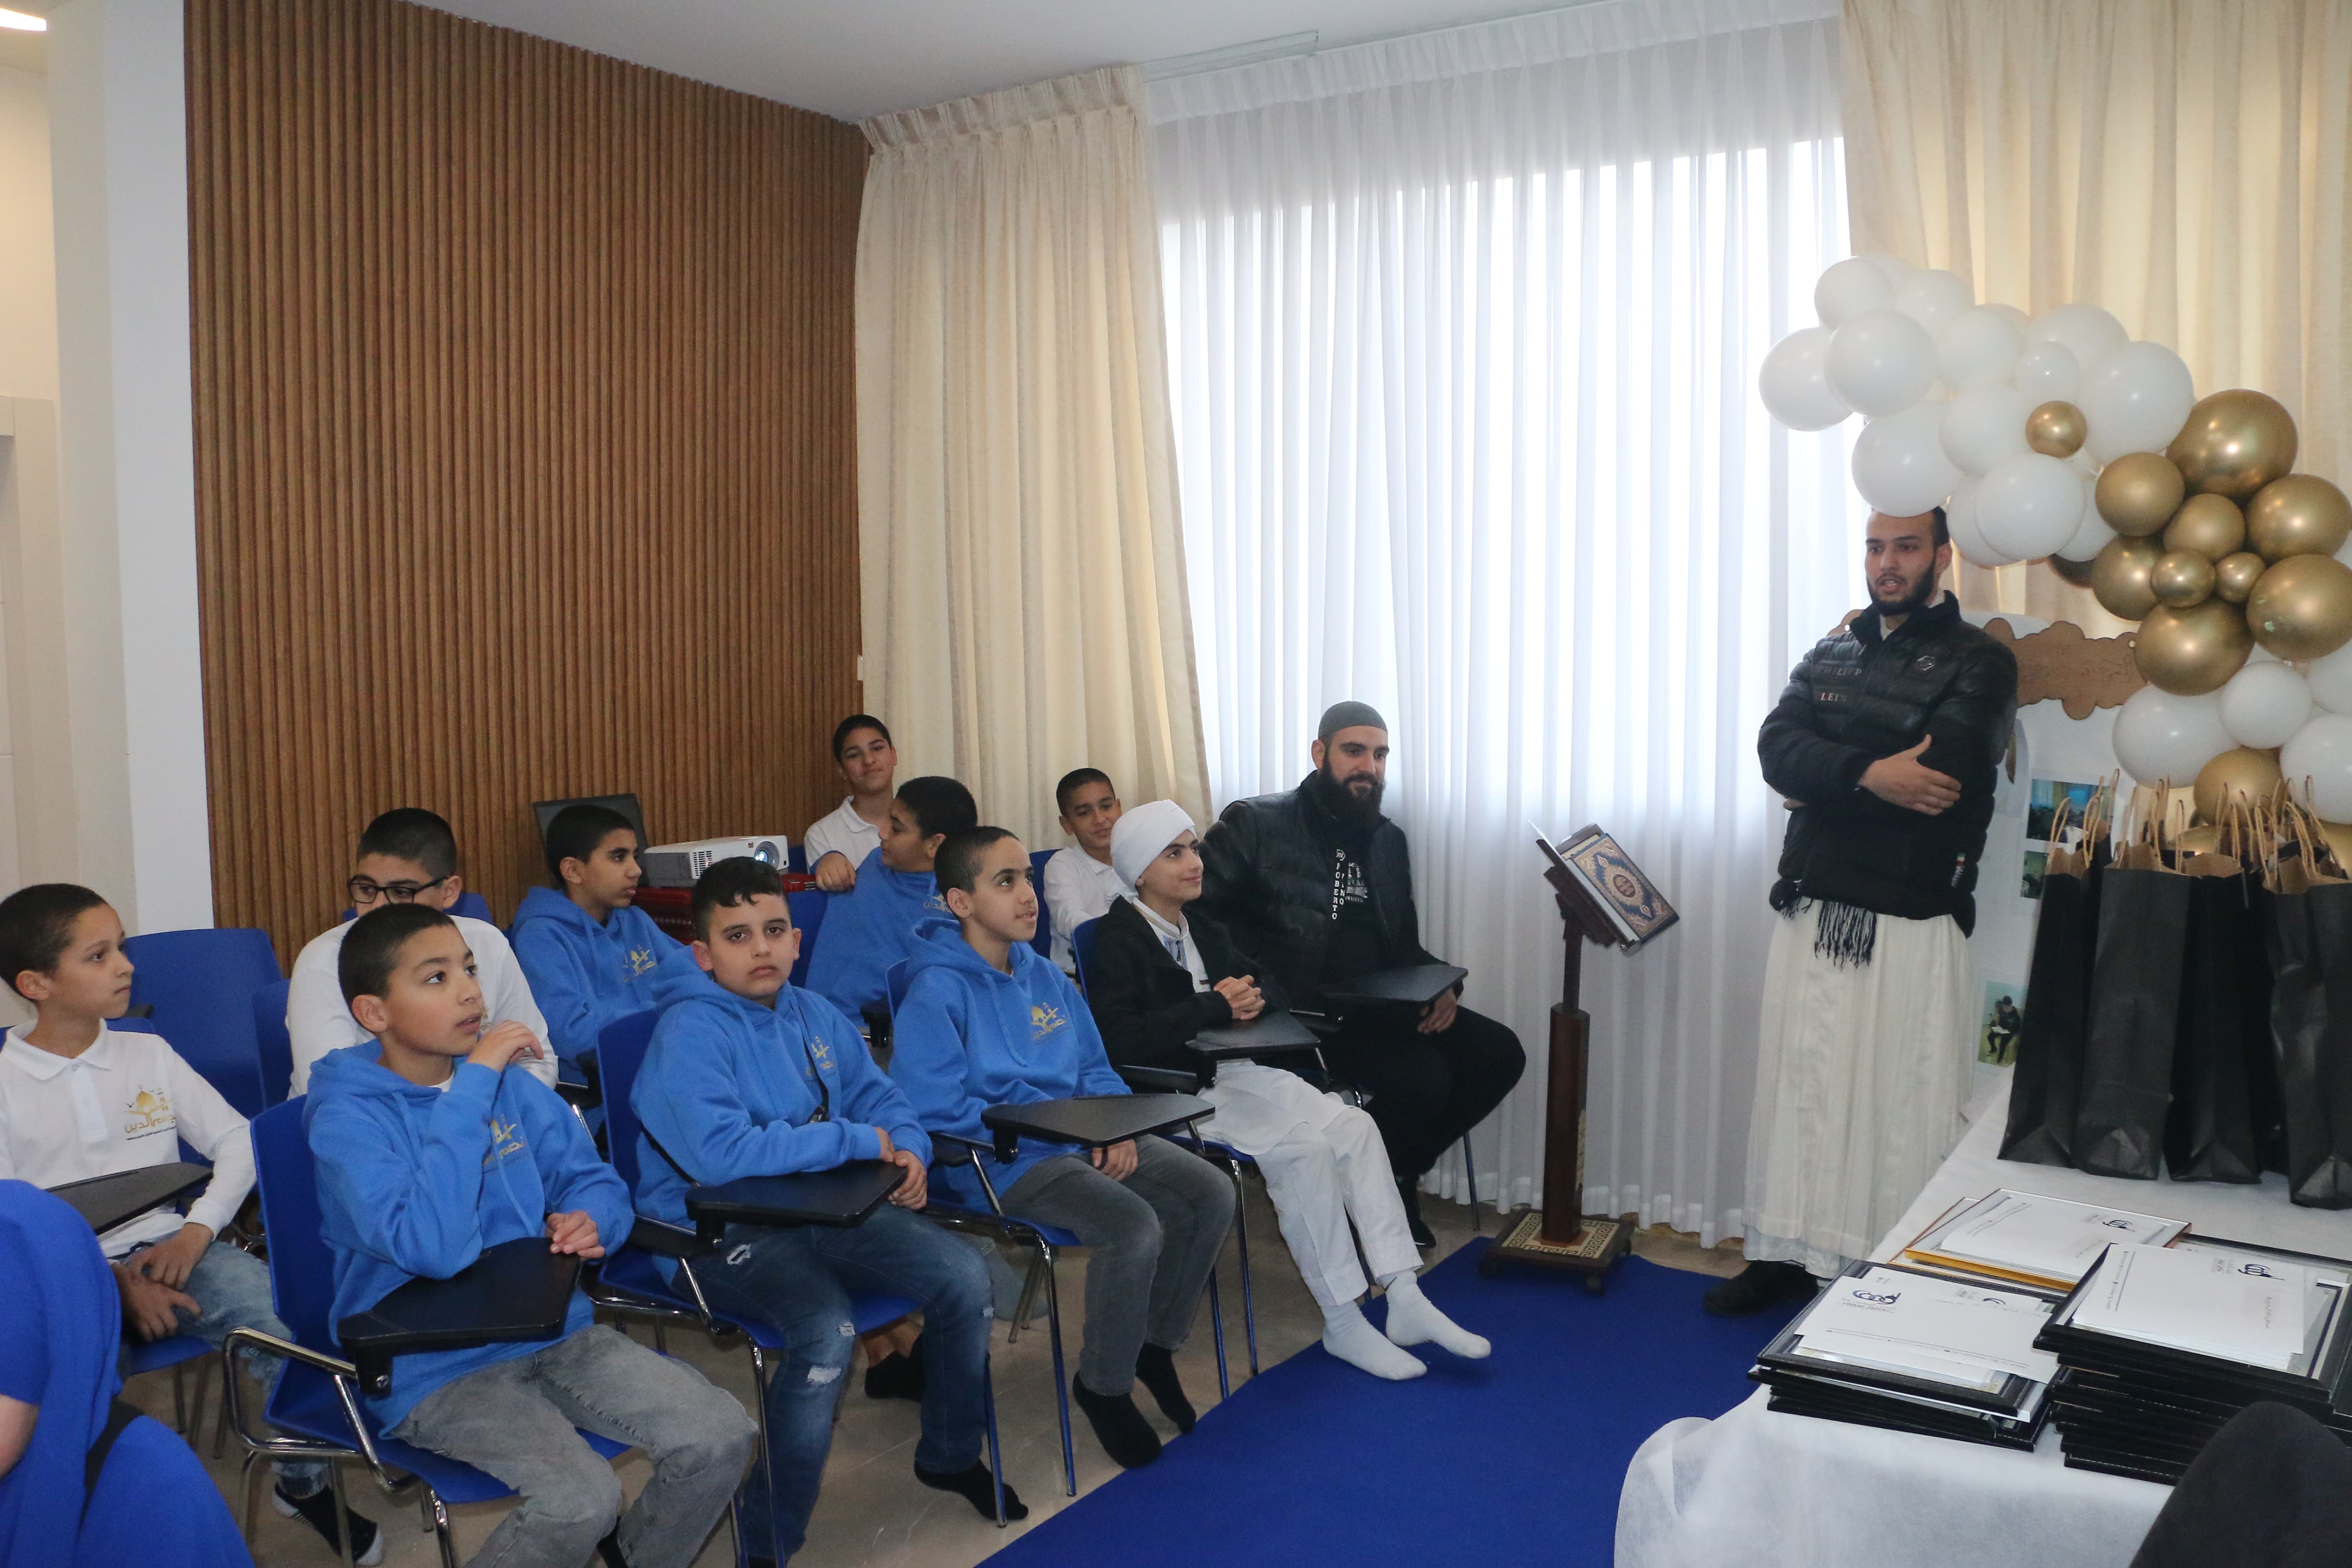 حفل تكريم  حفظة أجزاء من القرآن الكريم  في مركز نجم الدين في يافا